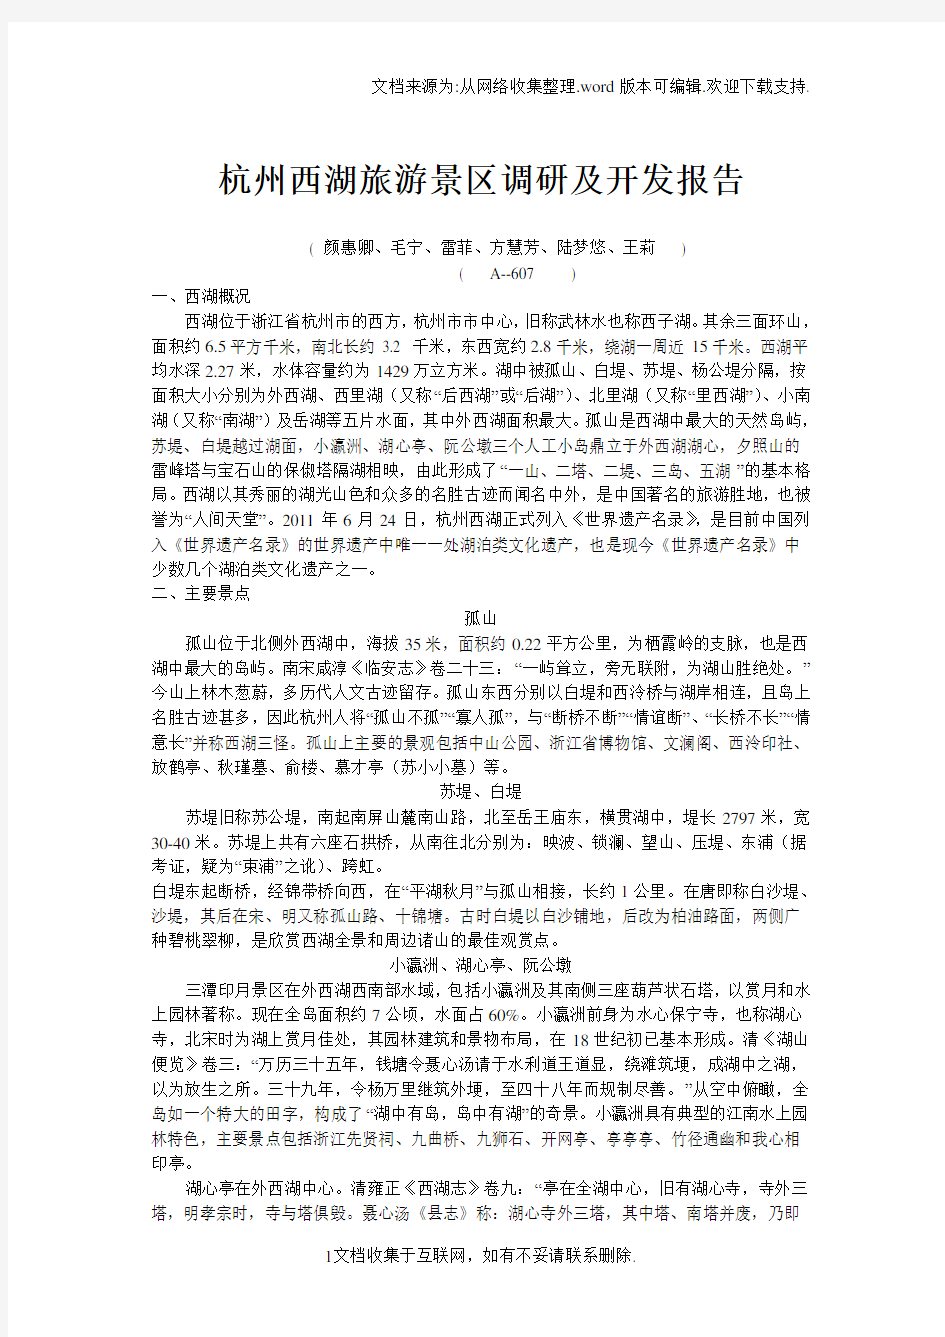 杭州西湖旅游景区调研及开发报告